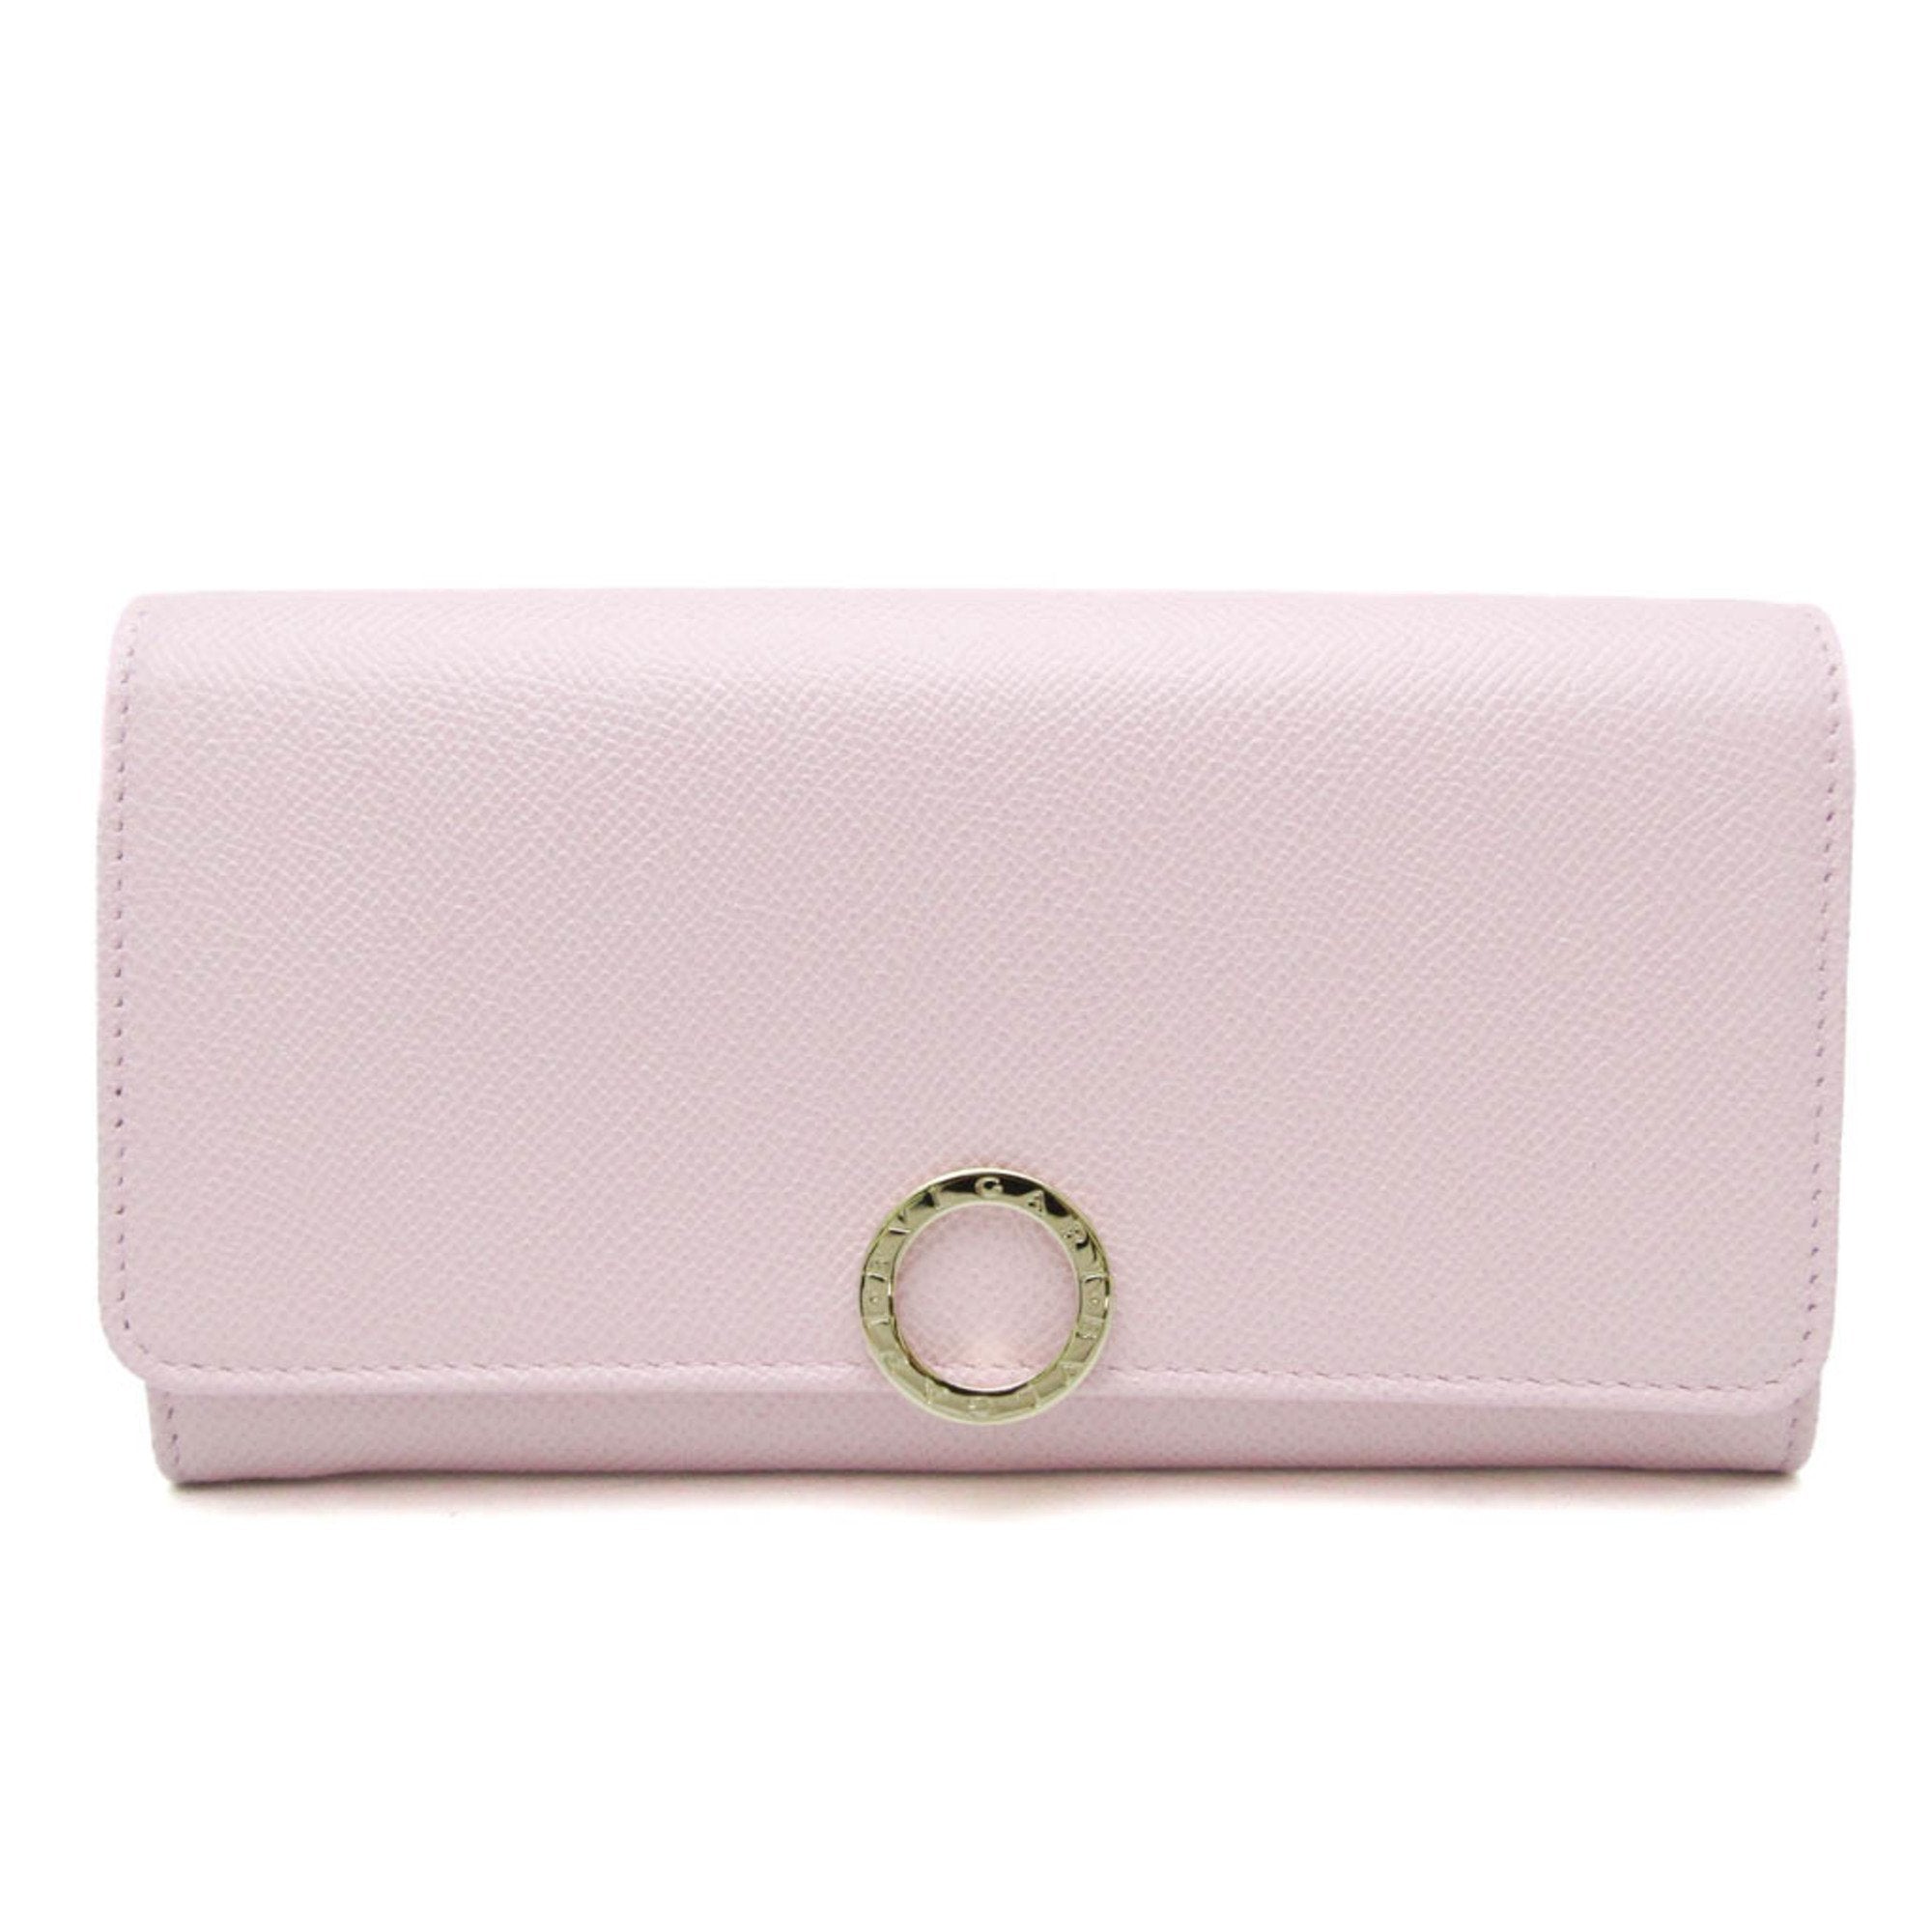 289058 Women's Leather Long Wallet [bi-fold] Light Pink